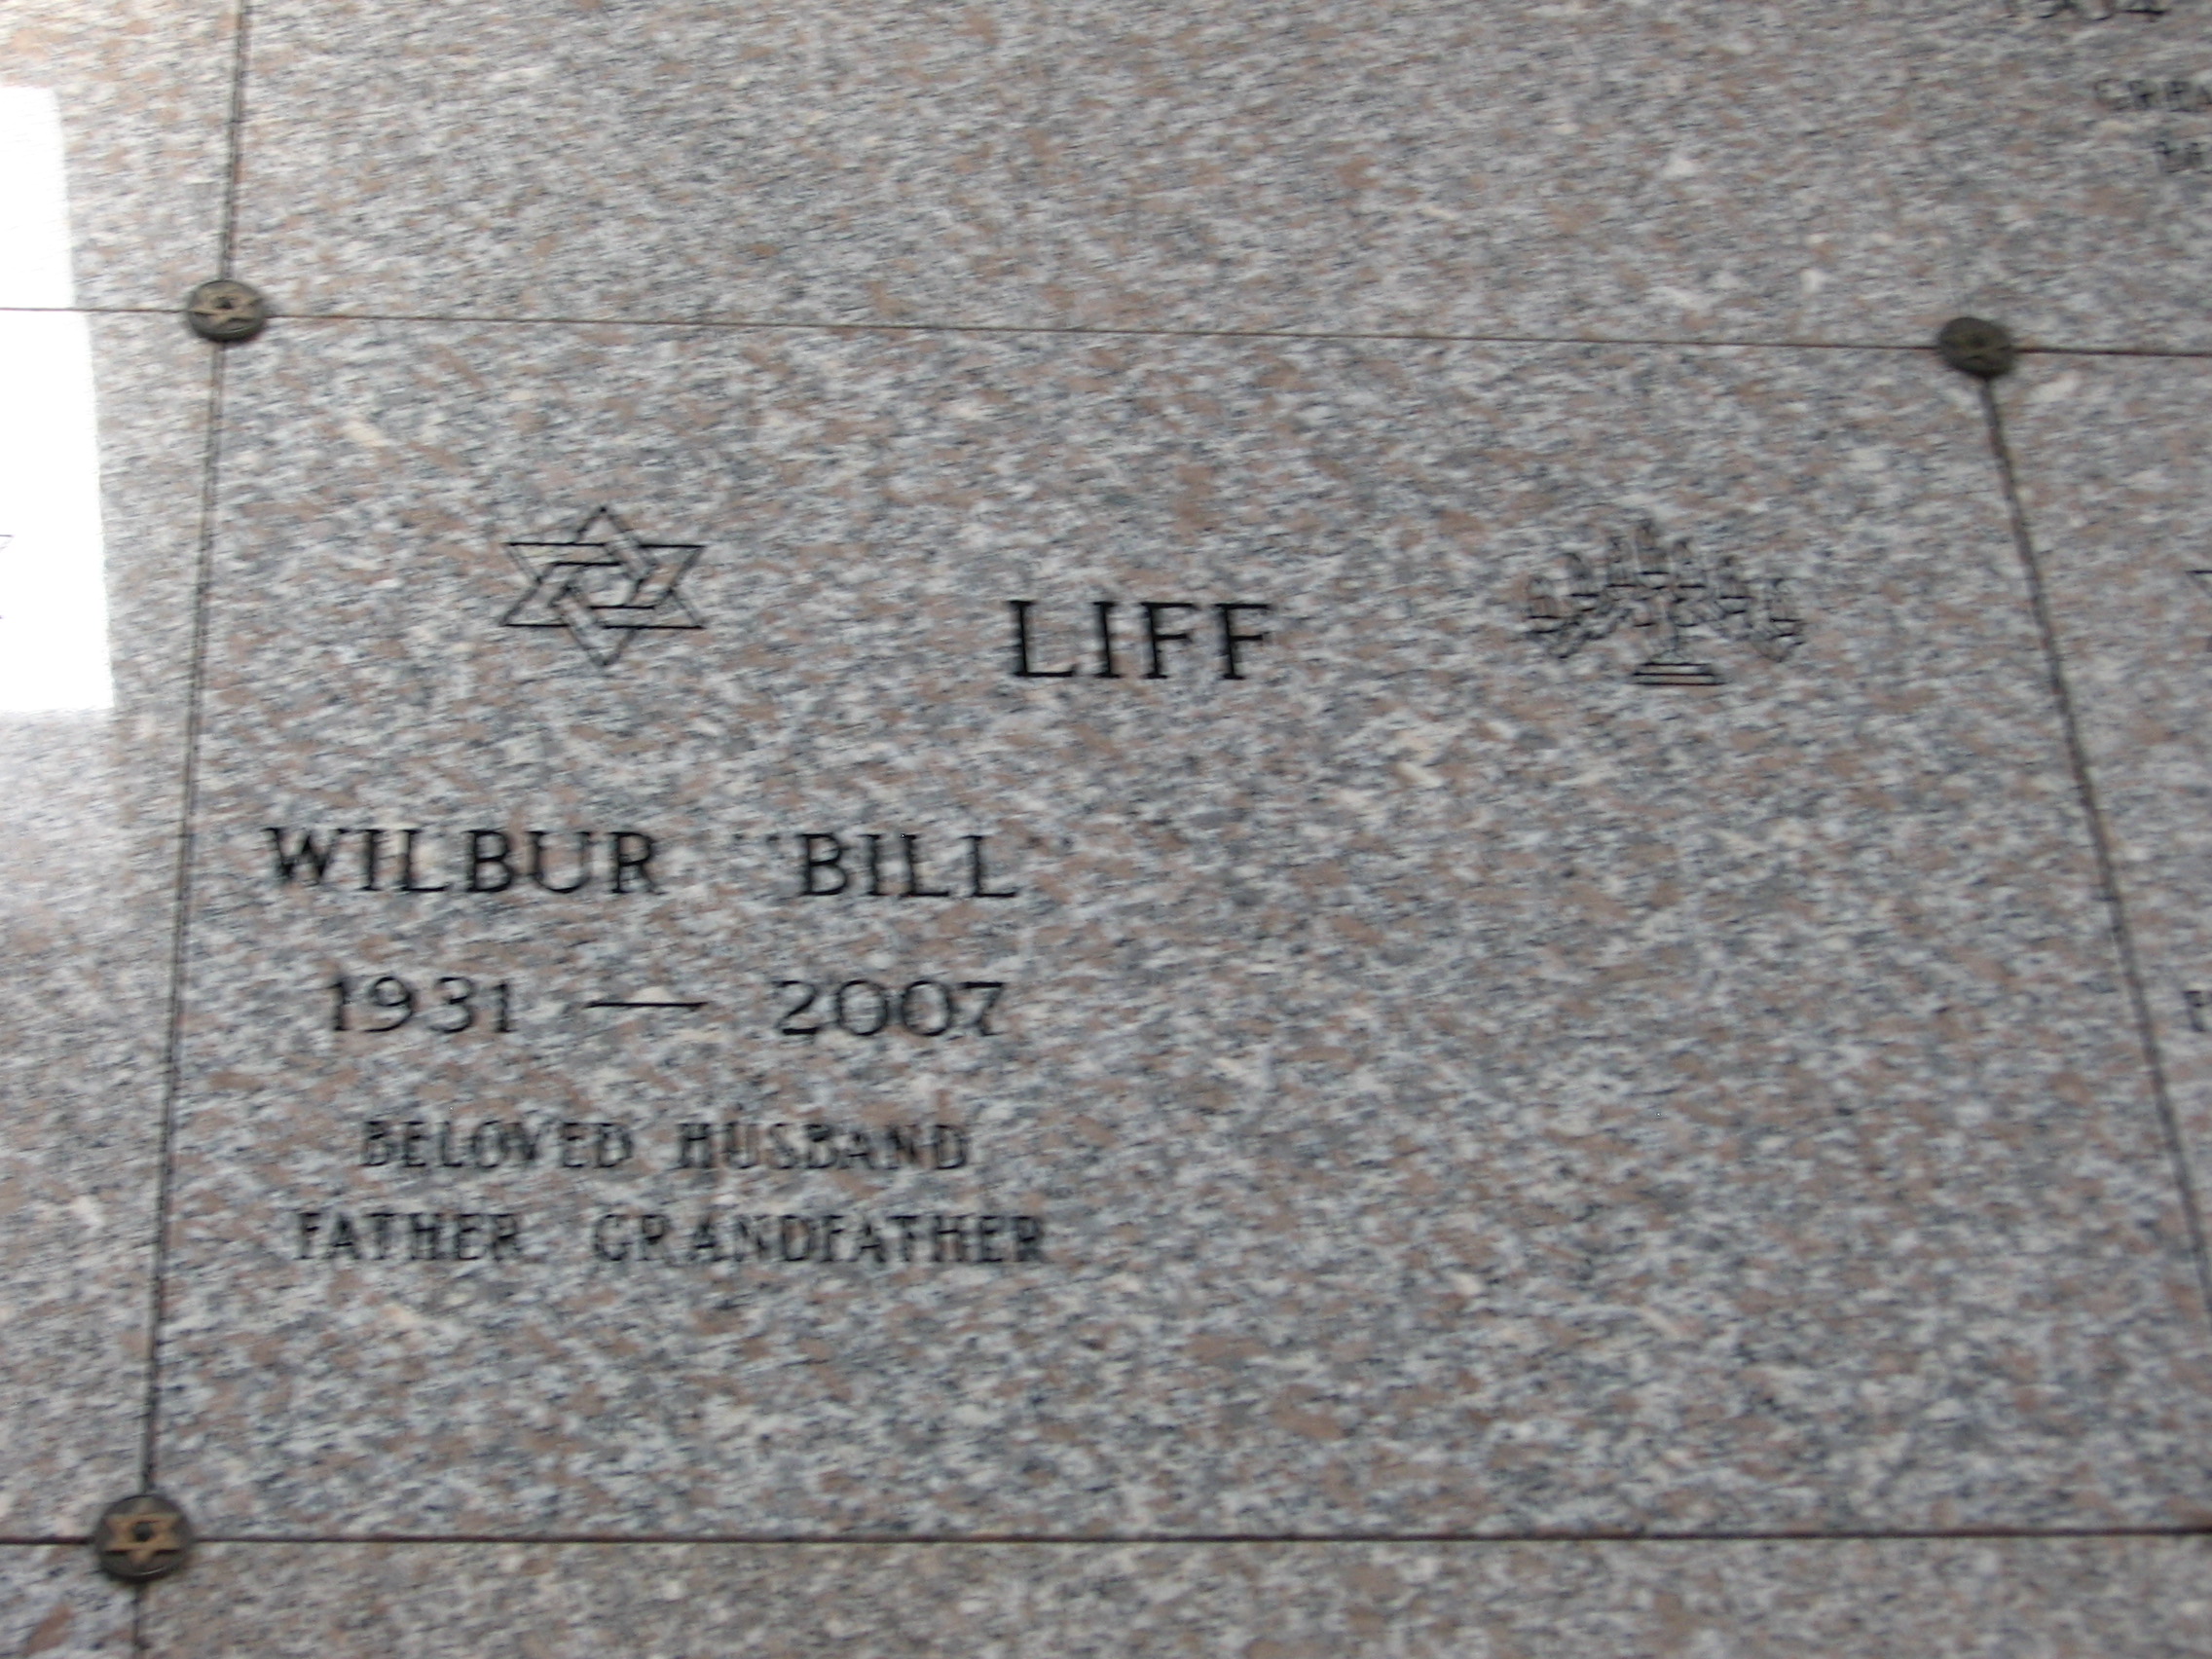 Wilbur "Bill" Liff